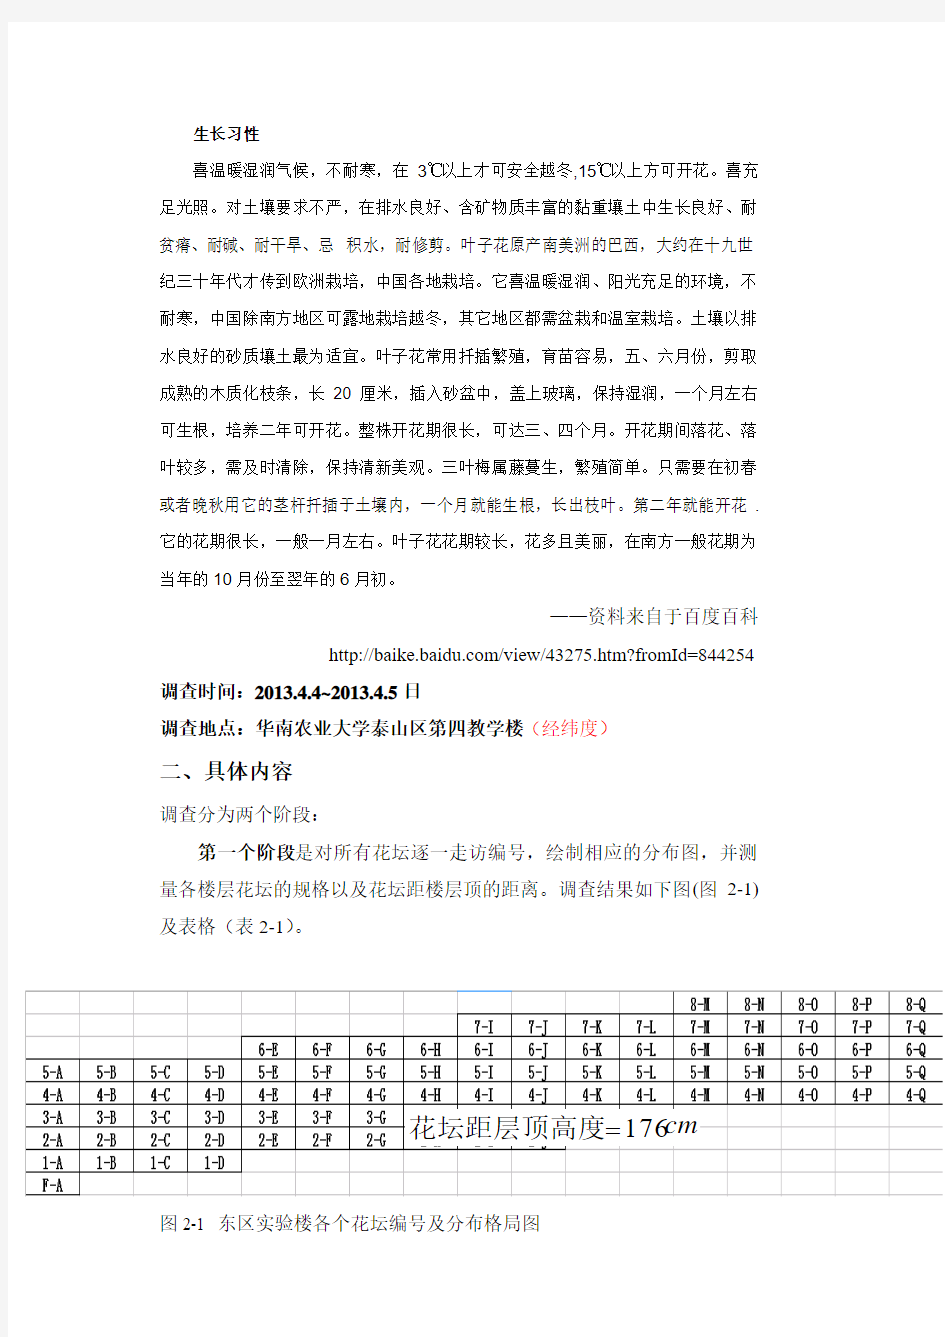 华南农业大学第四教学楼各楼层花坛规划管理调查报告